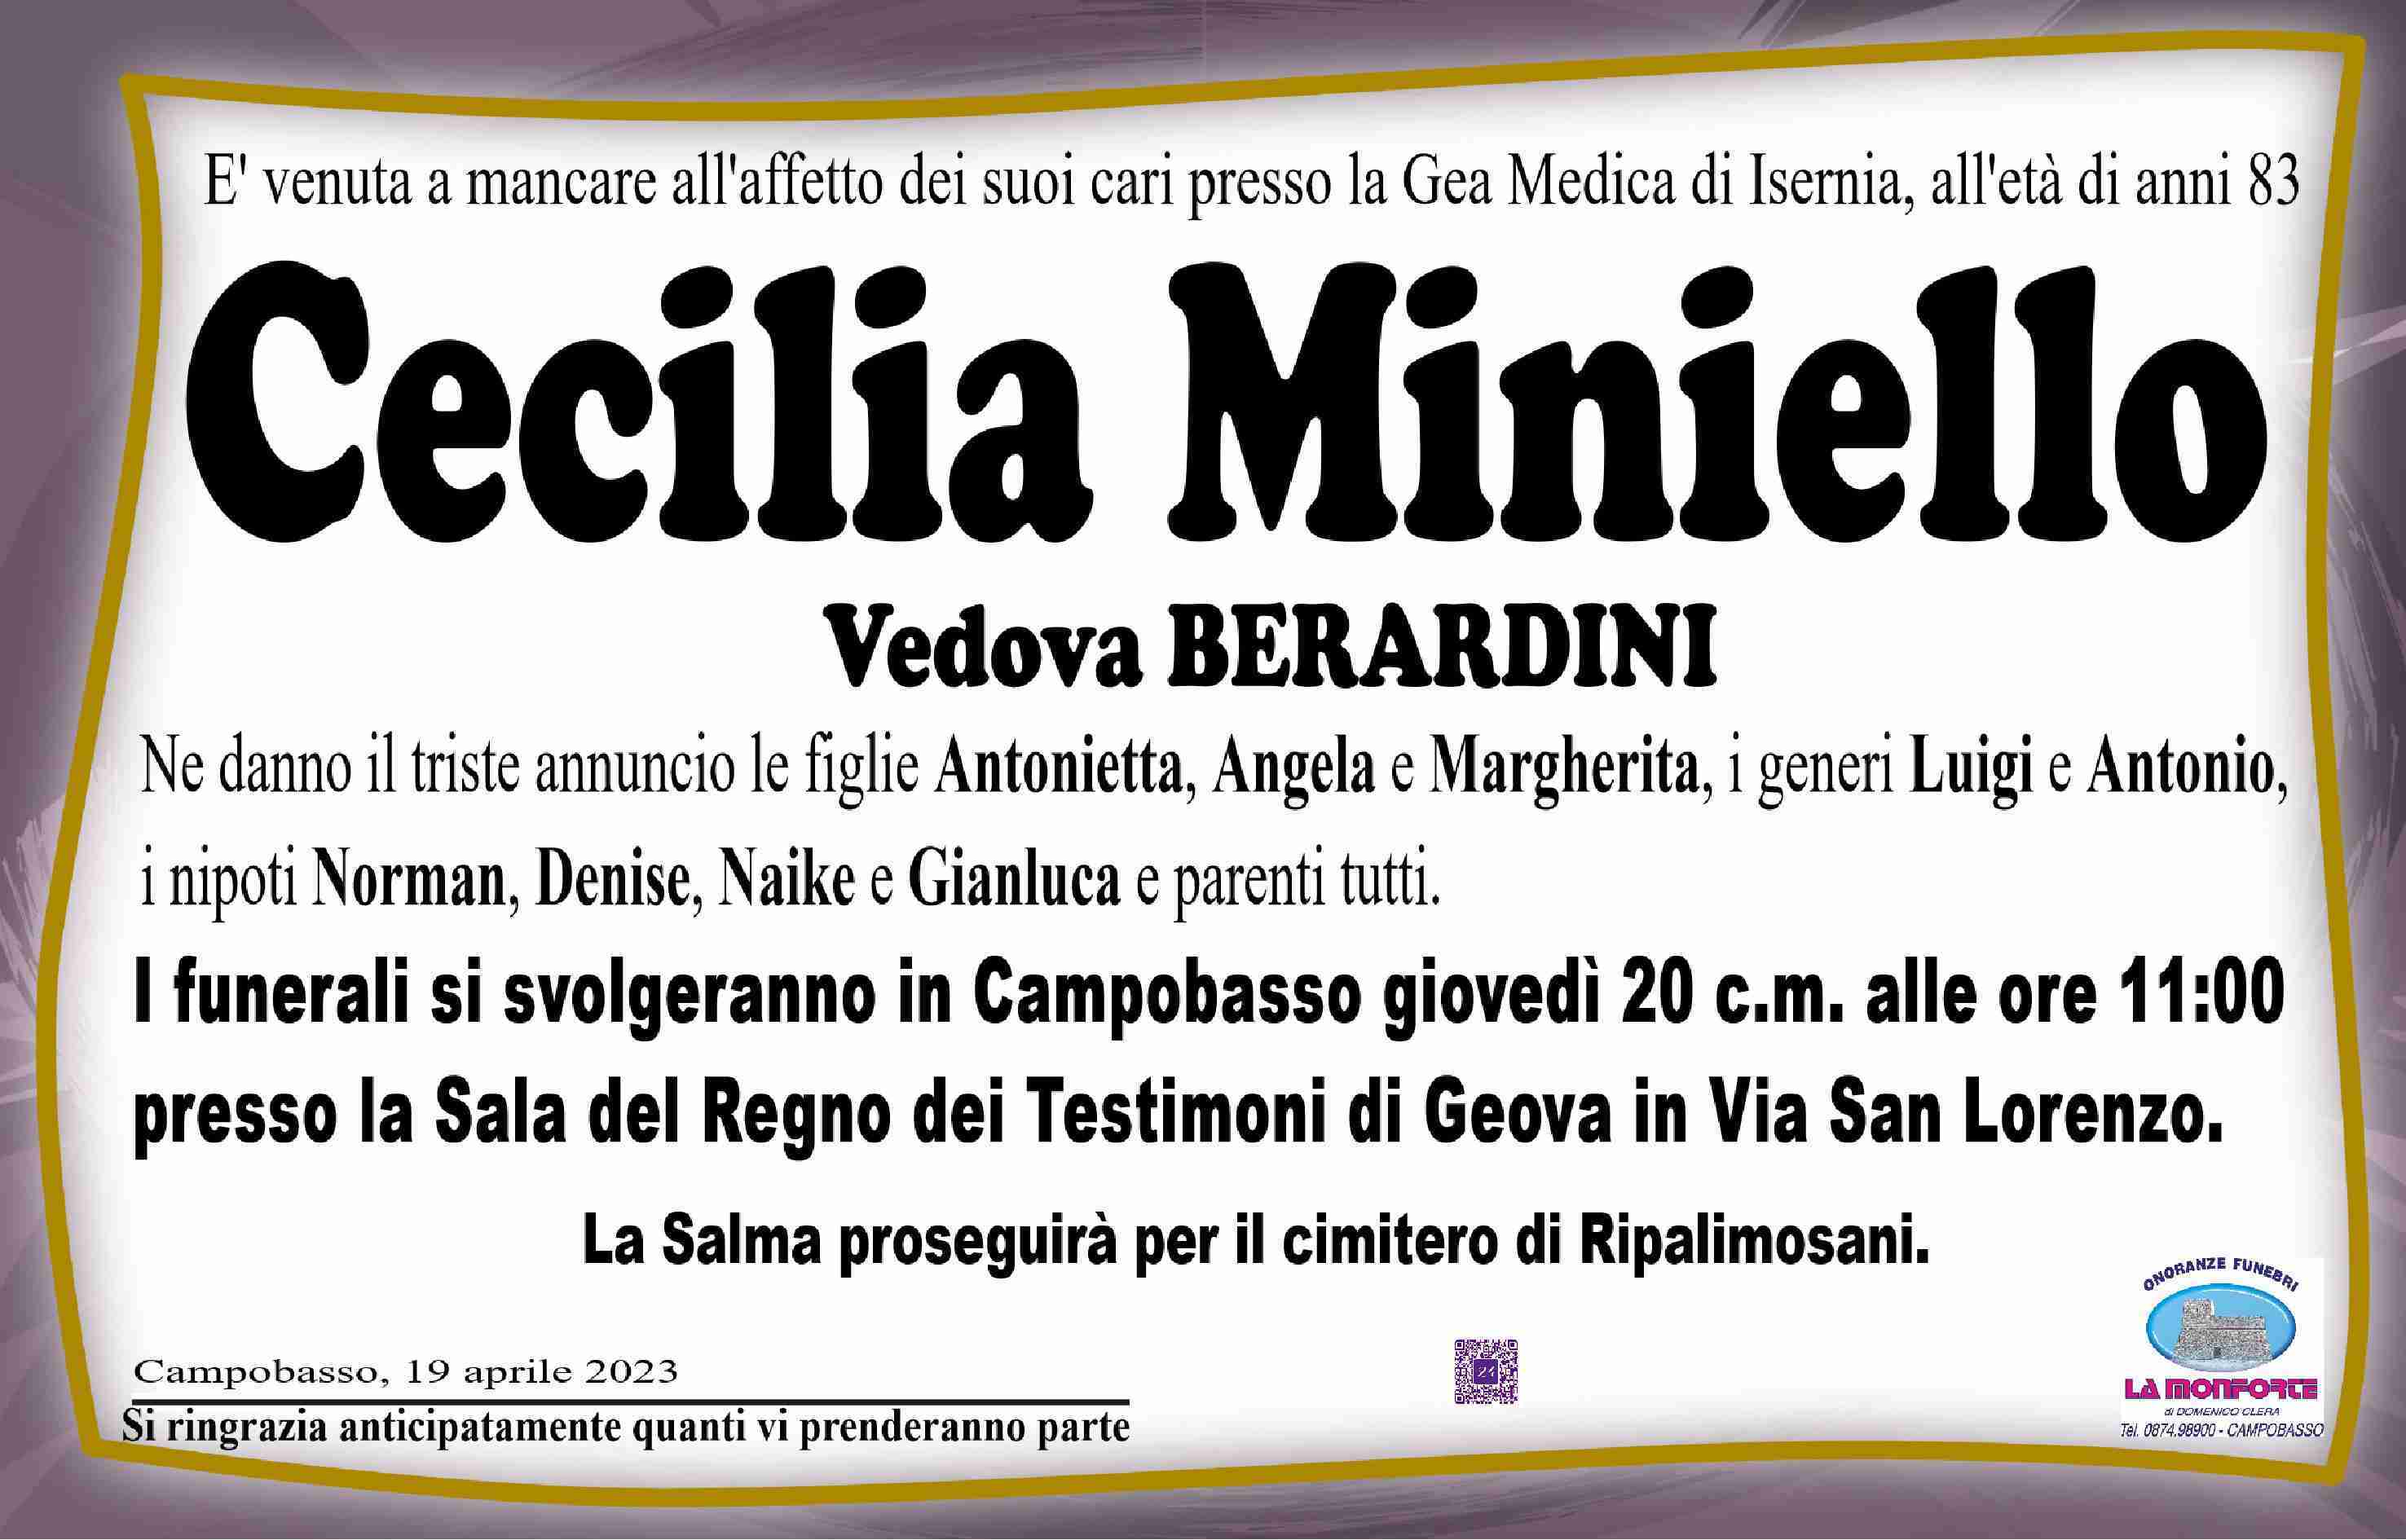 Cecilia Miniello